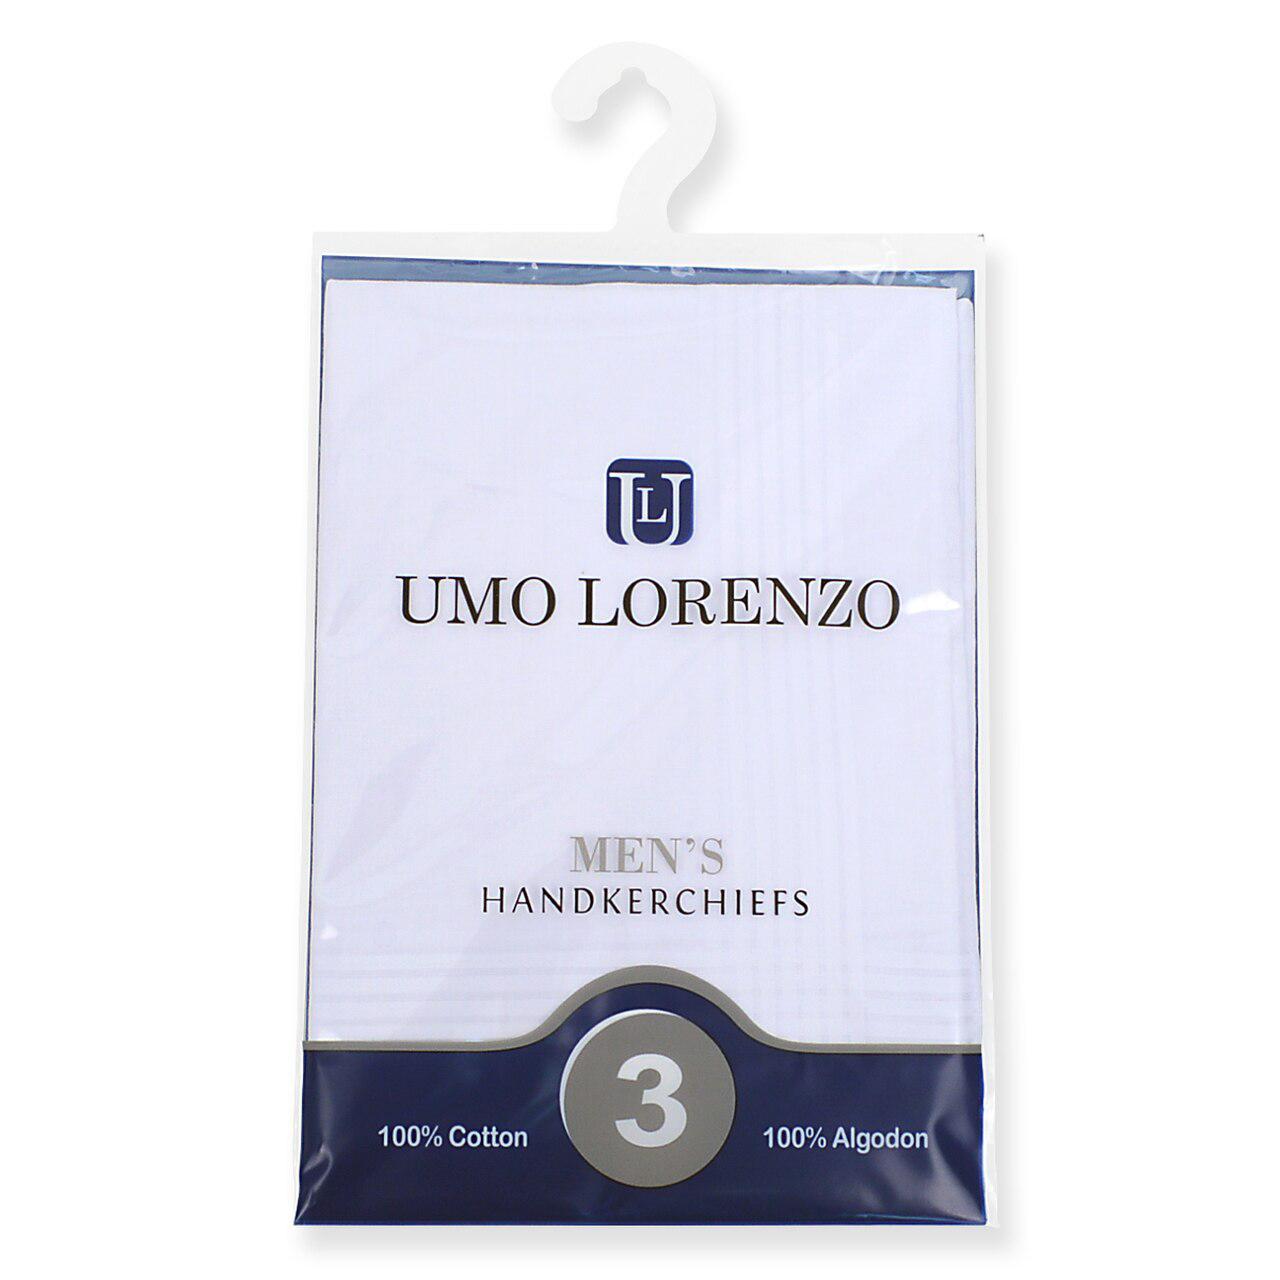  Umo Lorenzo : 3pk Handkerchiefs - White